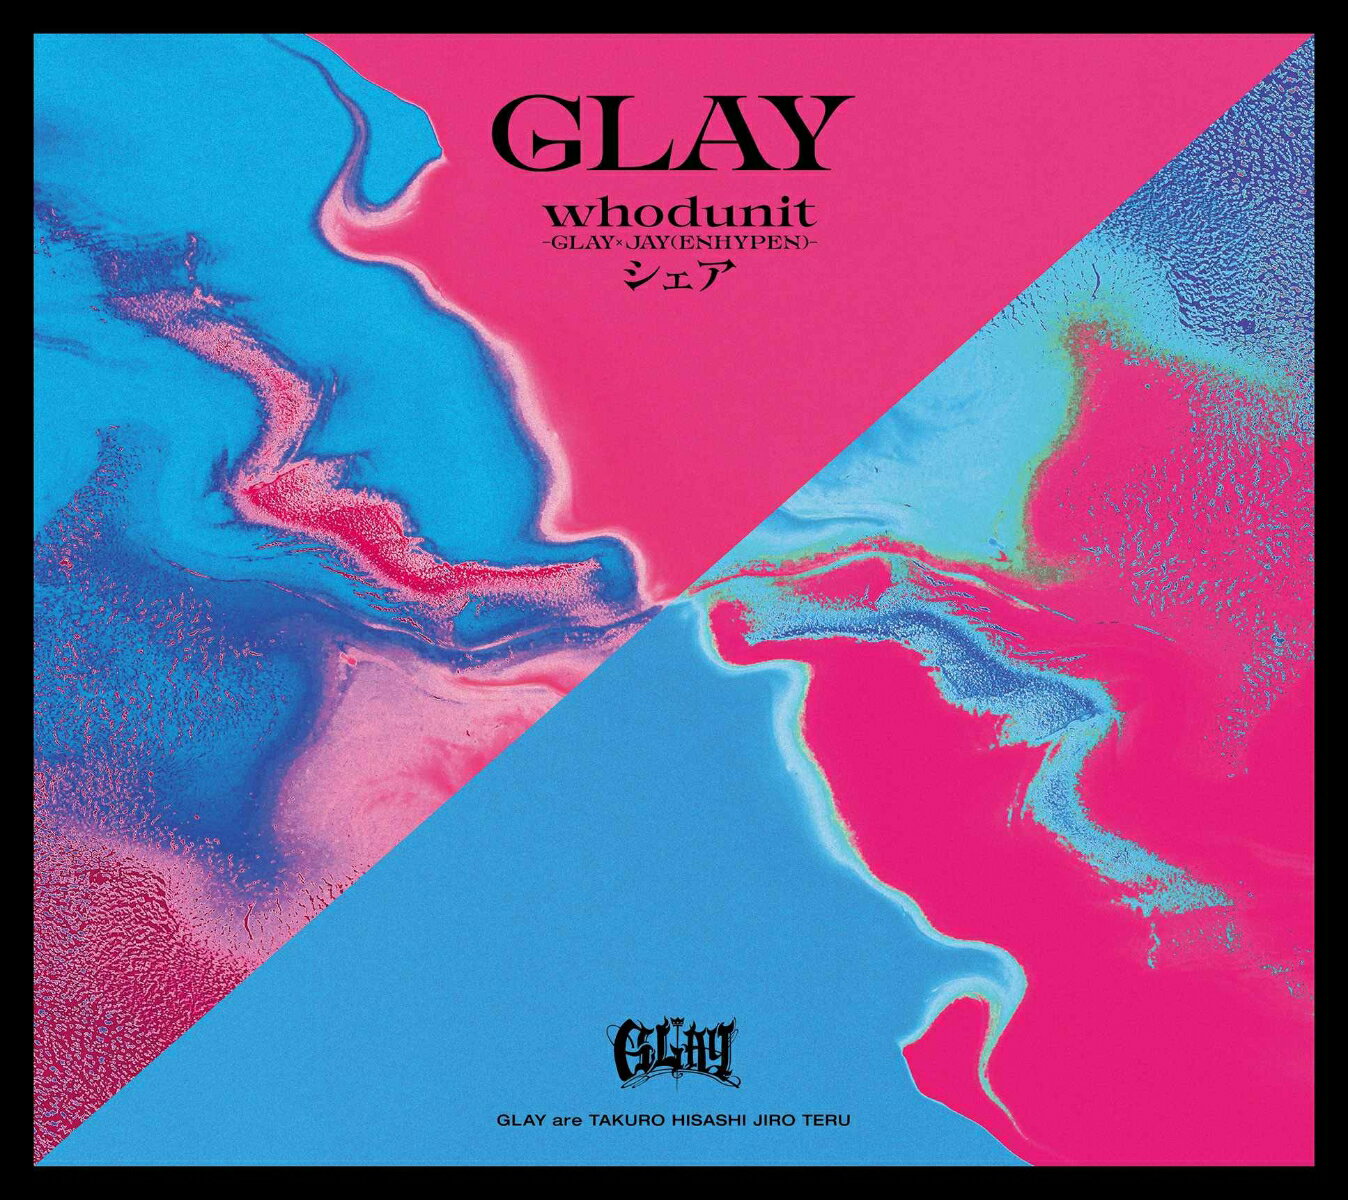 whodunit-GLAY × JAY(ENHYPEN)- /シェア(缶バッジスクエア型(57mm)) 